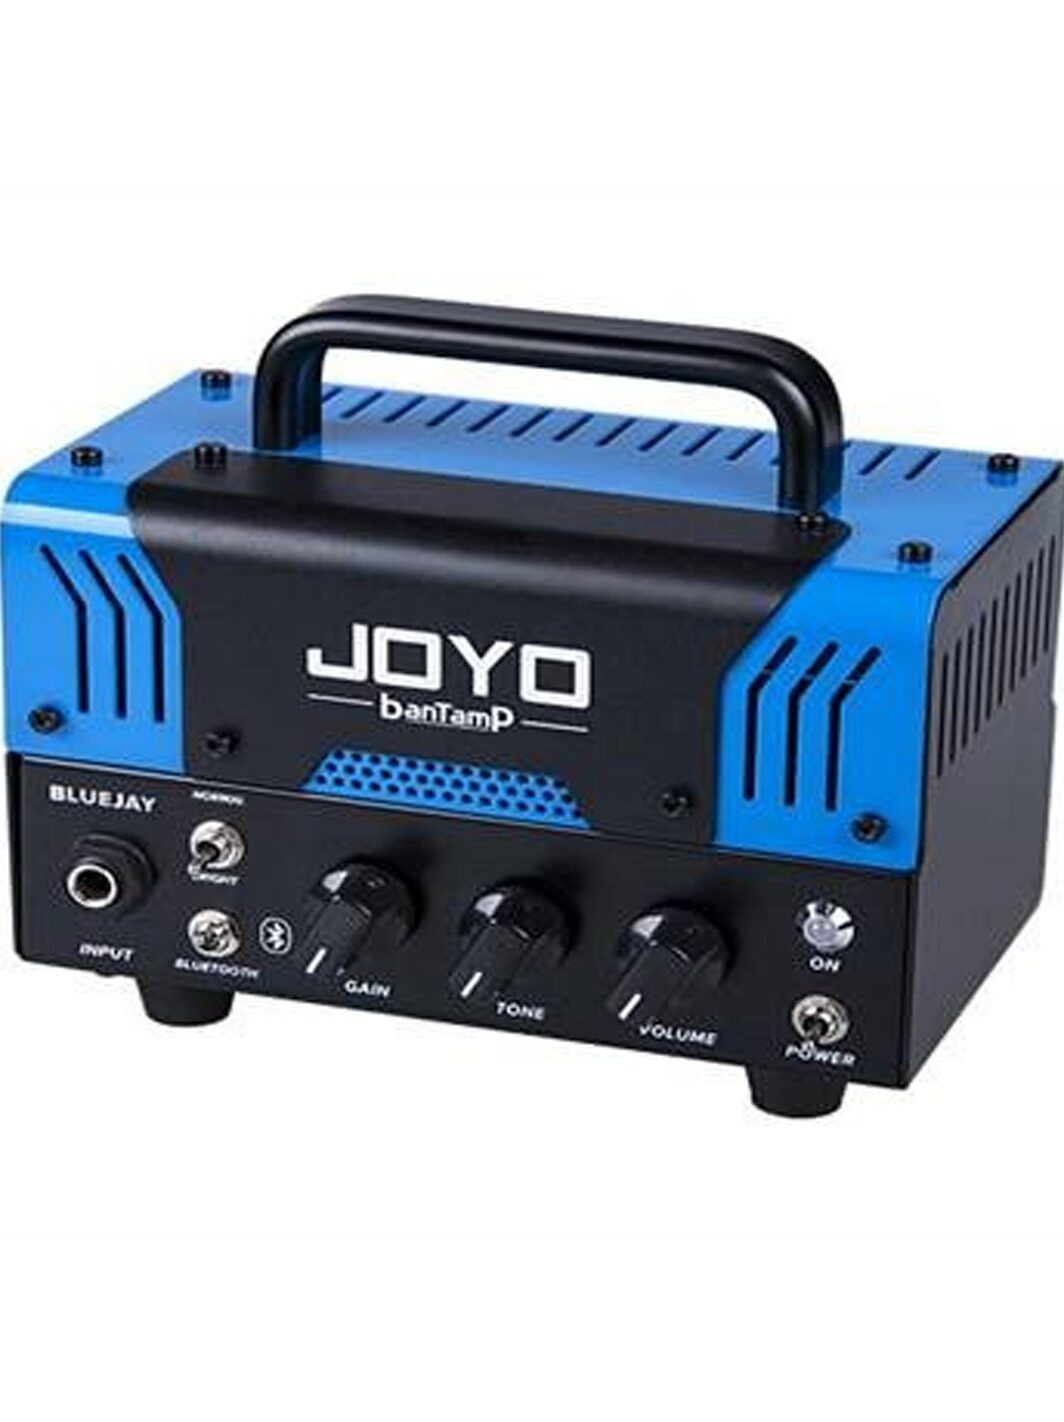 Joyo Blujay Miniamp 2 canali Amplificatore Chitarra